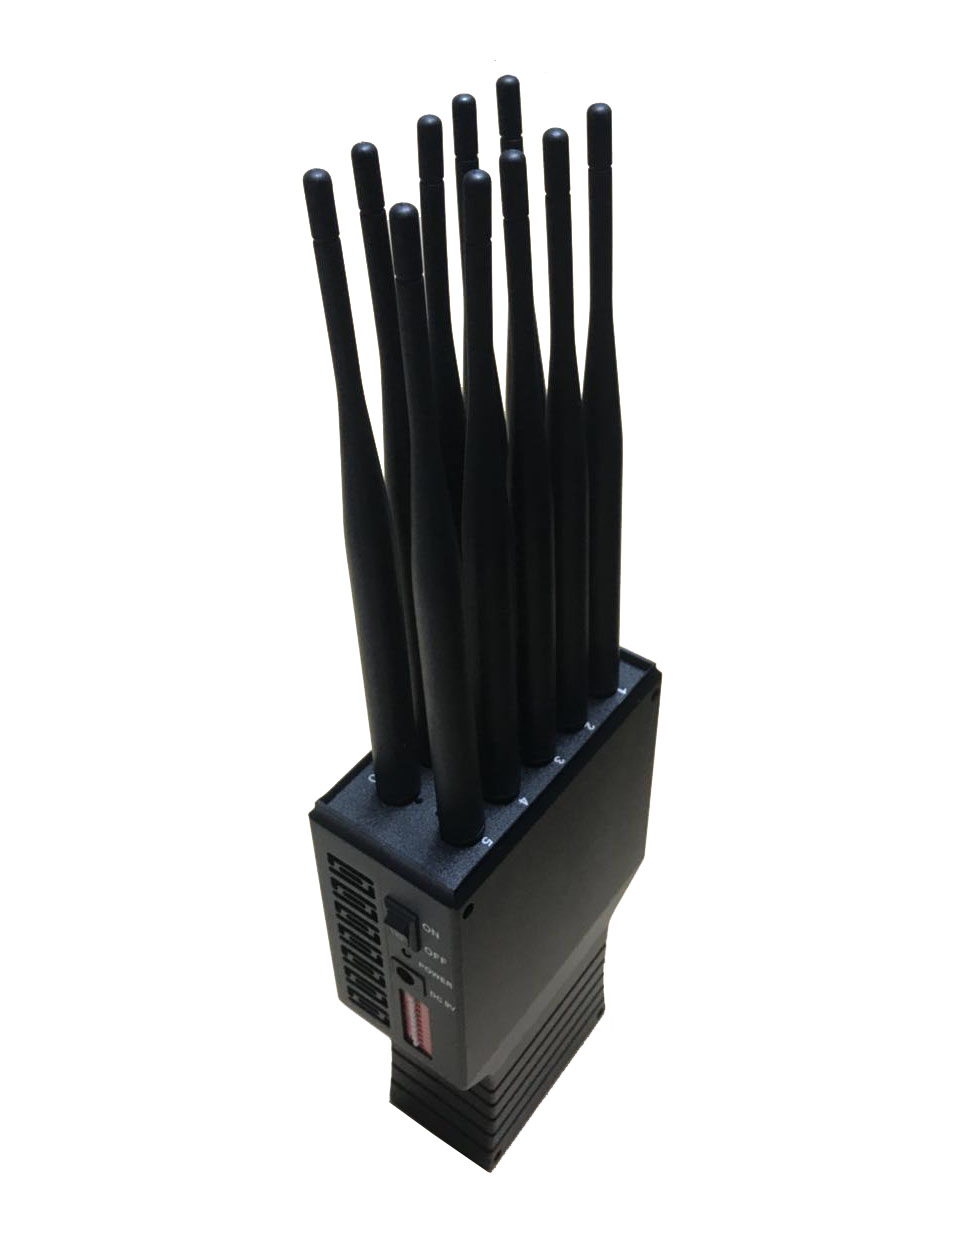 10 Antennen WLAN2.4G Jammer